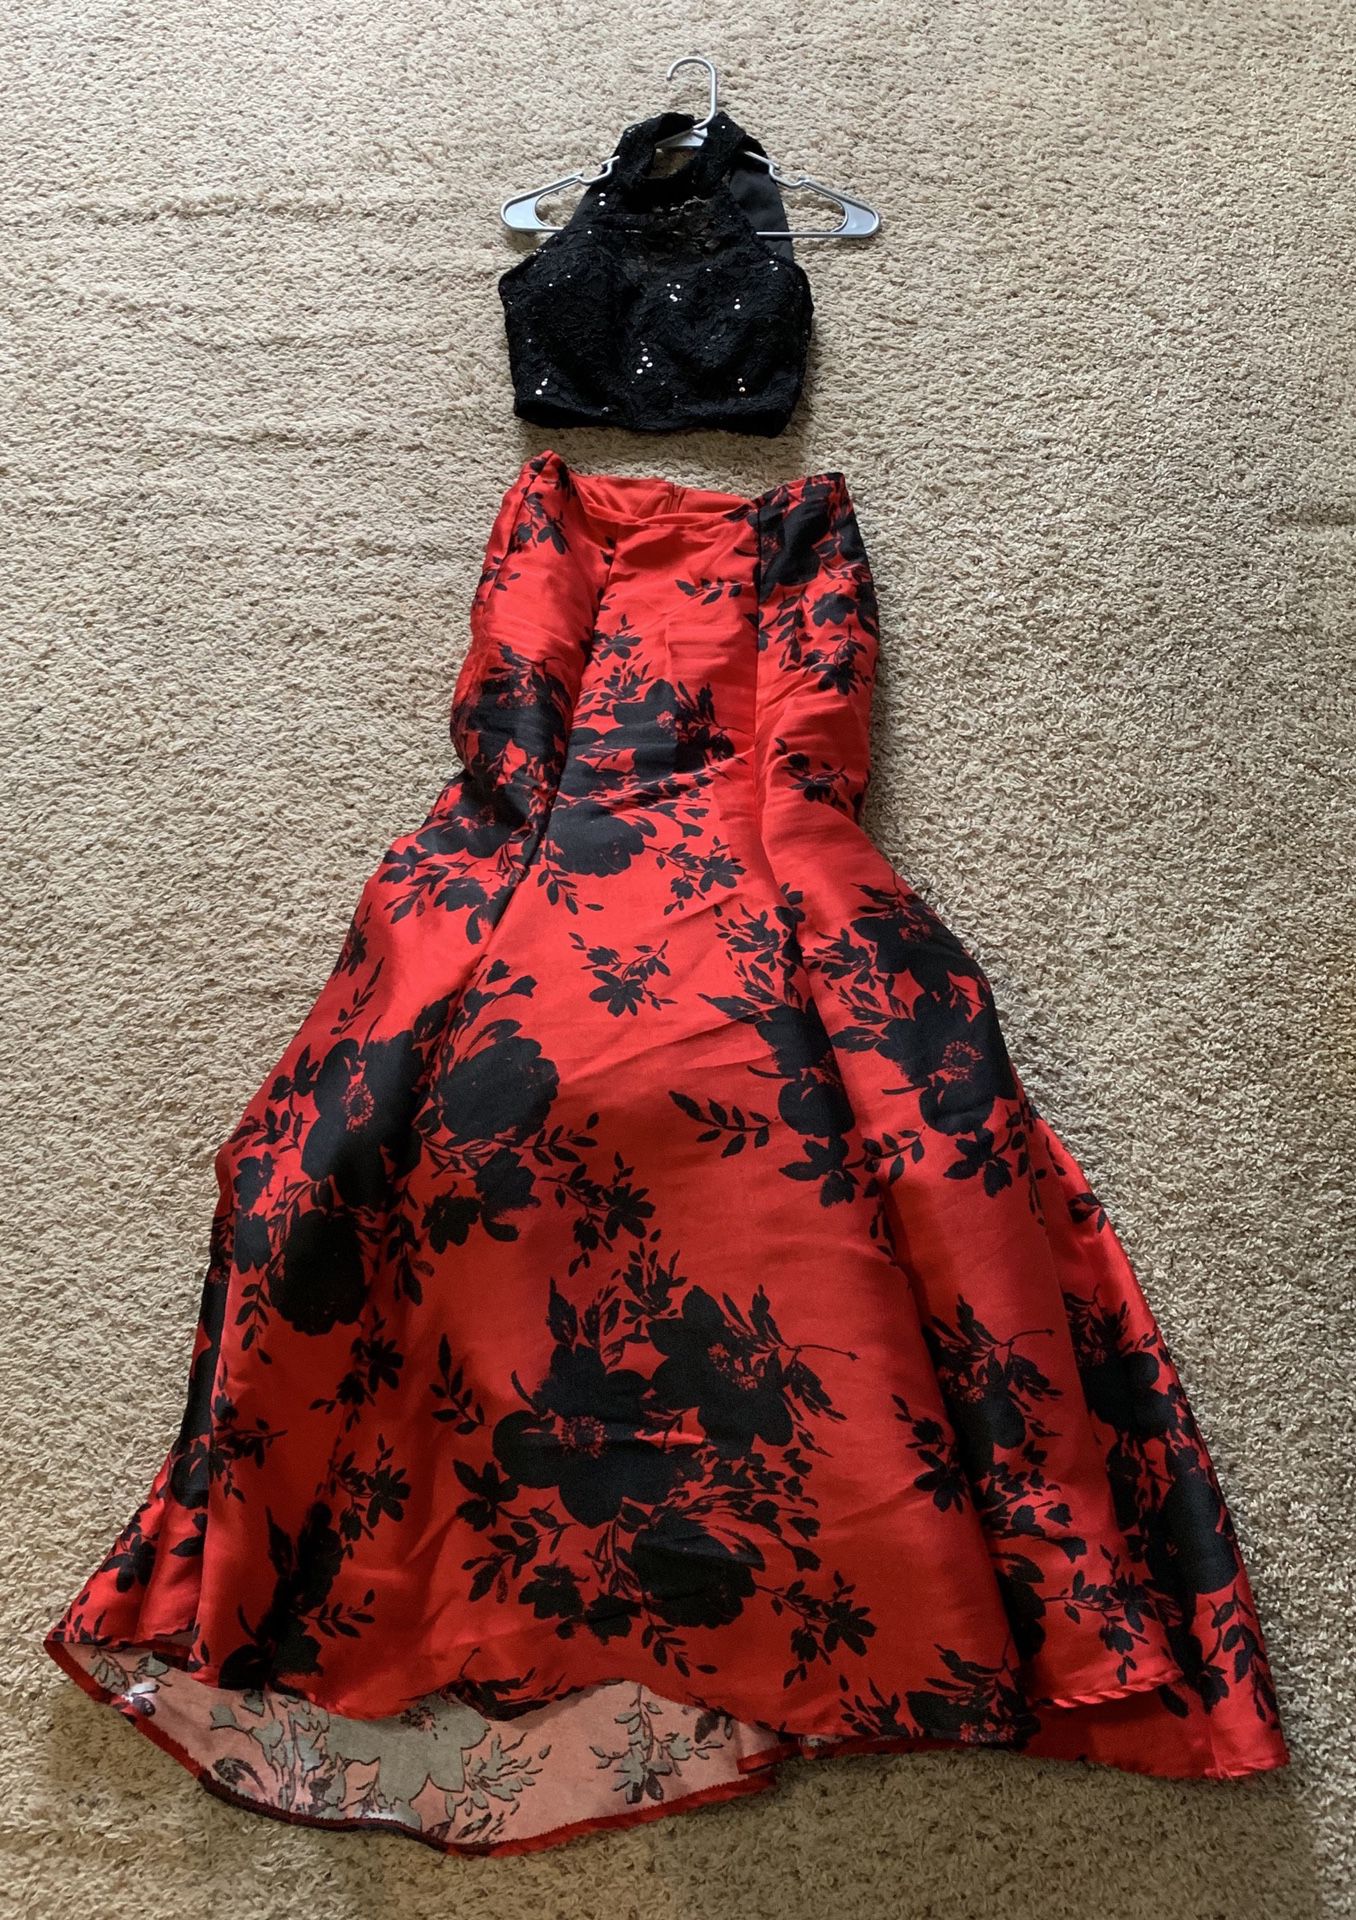 Windsor/Prom dress 2019